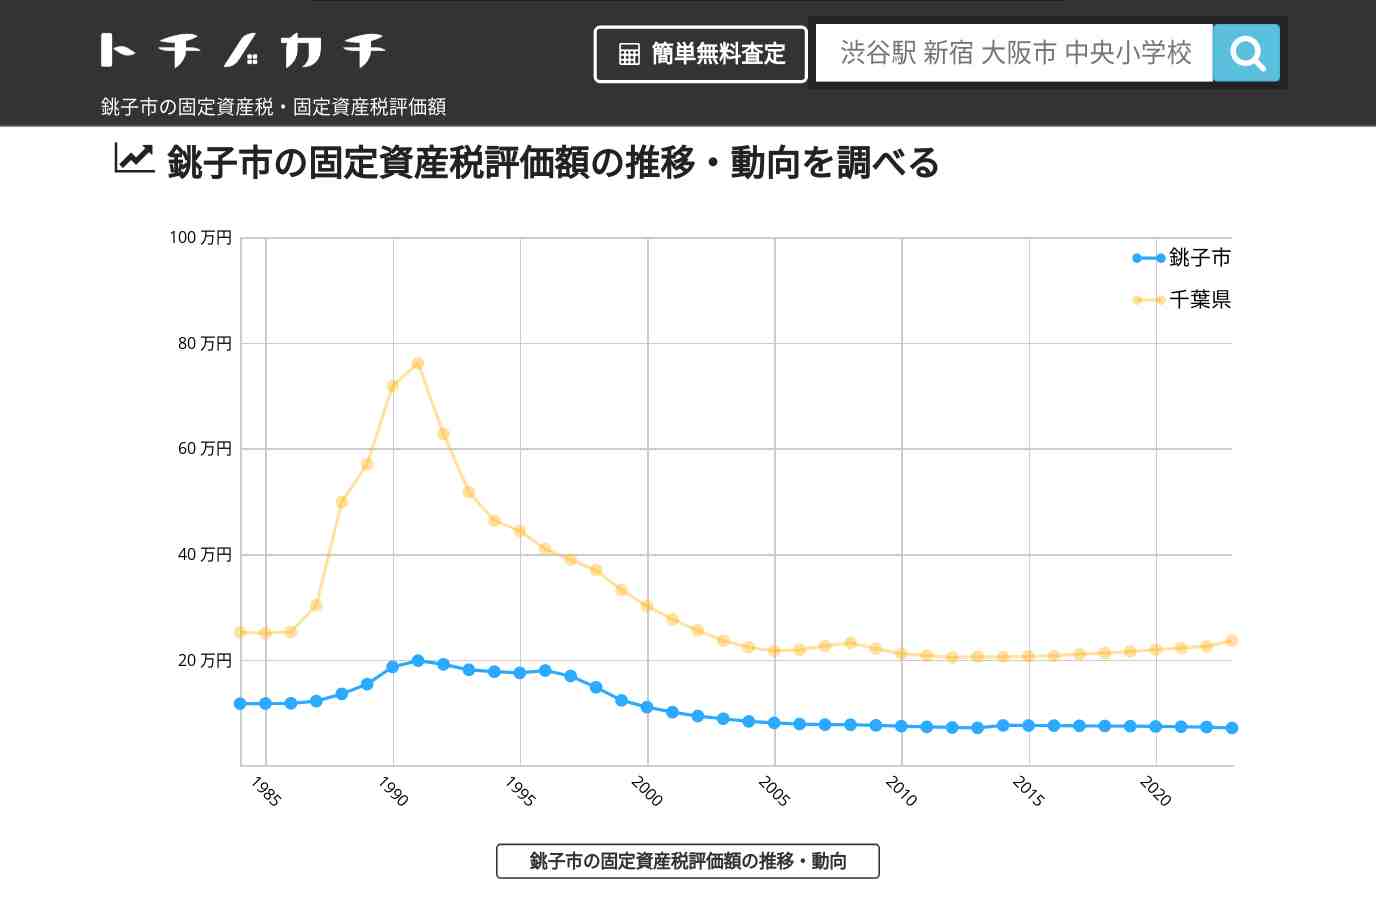 明神小学校(千葉県 銚子市)周辺の固定資産税・固定資産税評価額 | トチノカチ